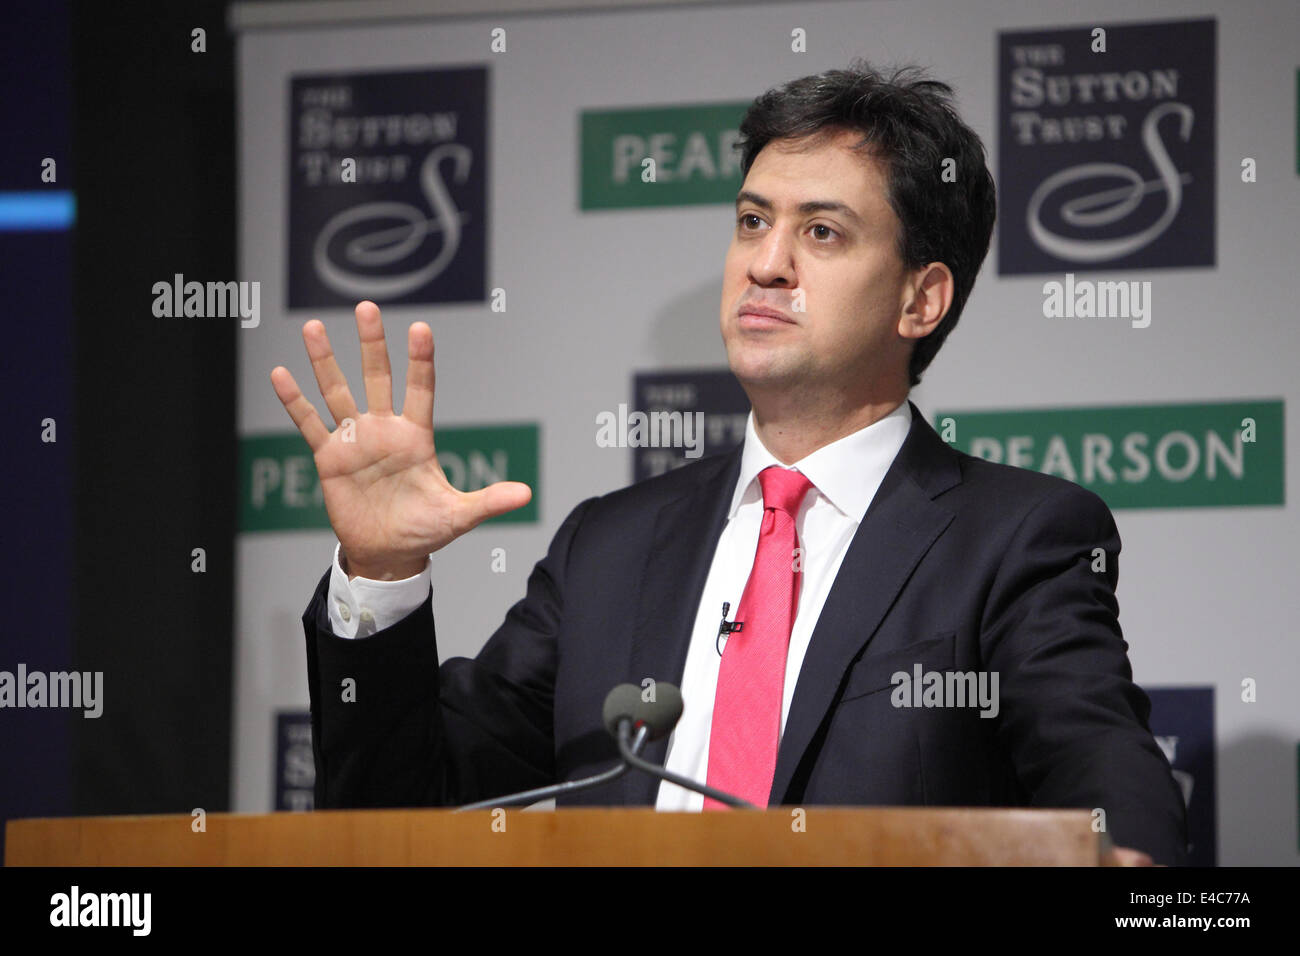 Londres, Royaume-Uni. 8 juillet, 2014. Rt Hon Ed Miliband MP parler à la Pearson/Sutton Trust des ambitions supérieures à Londres. sommet Credit : Zute Lightfoot/Alamy Live News Banque D'Images